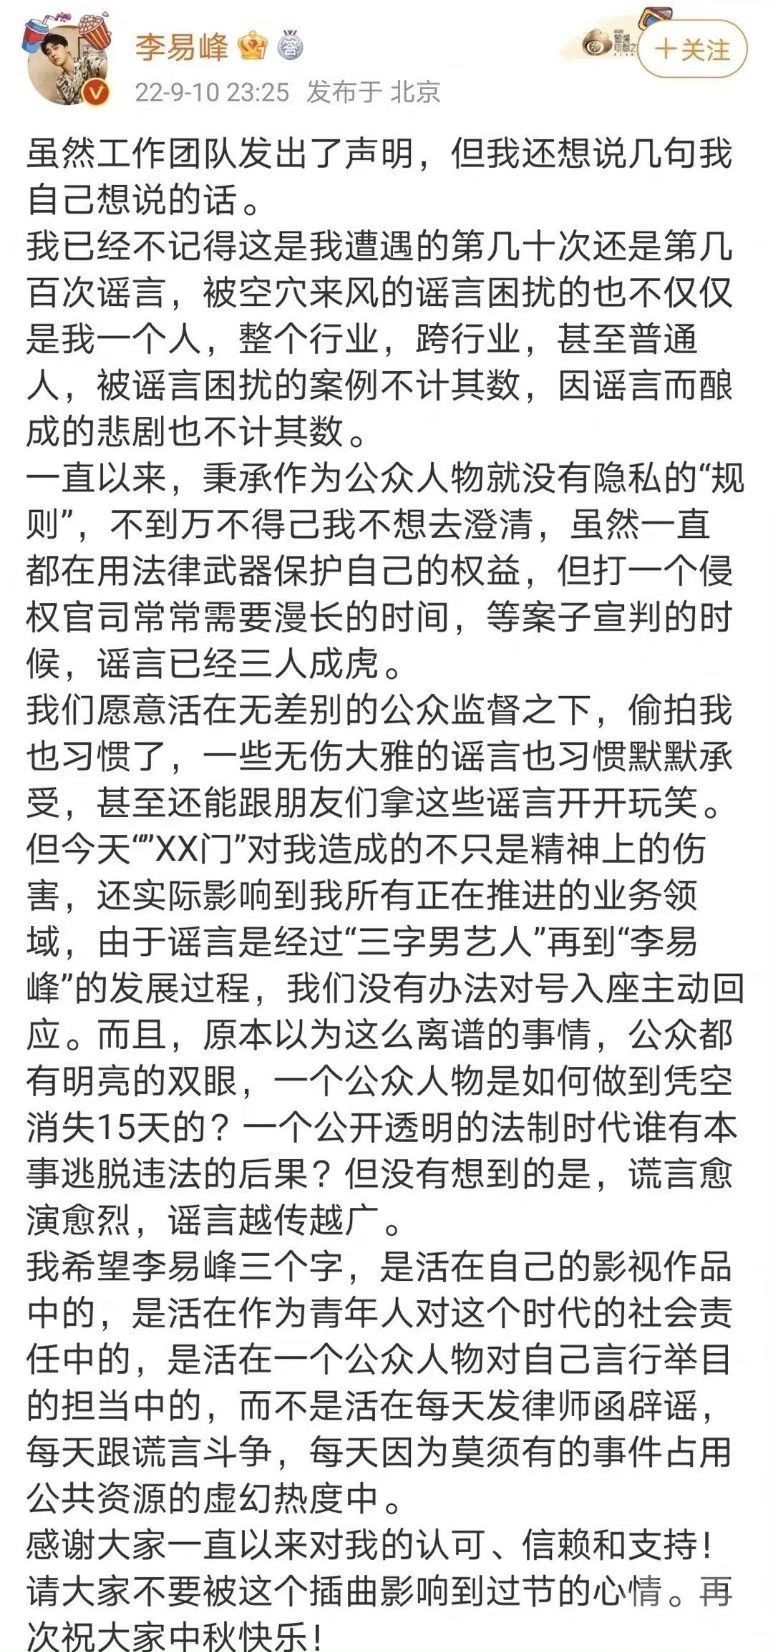 網傳李易峰床戰片 被指公開「選妃」